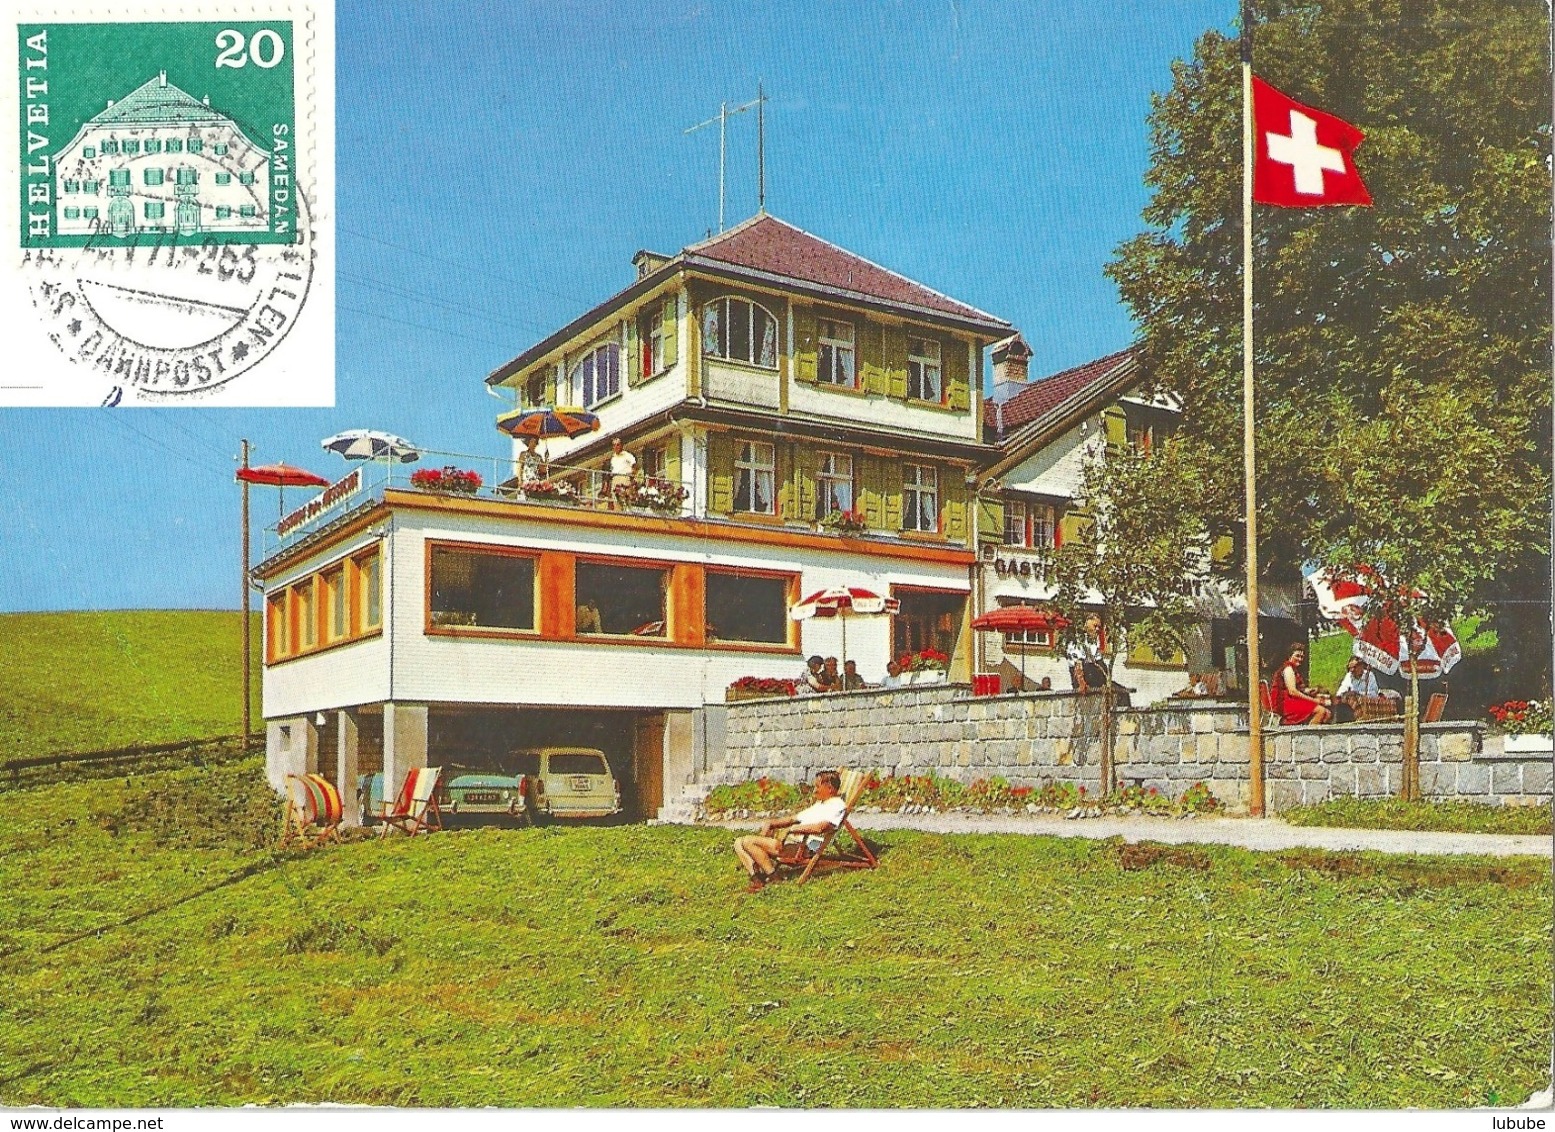 Schwende - Gasthaus Pension Frohe Aussicht  (Bahnstempel)          1971 - Schwende